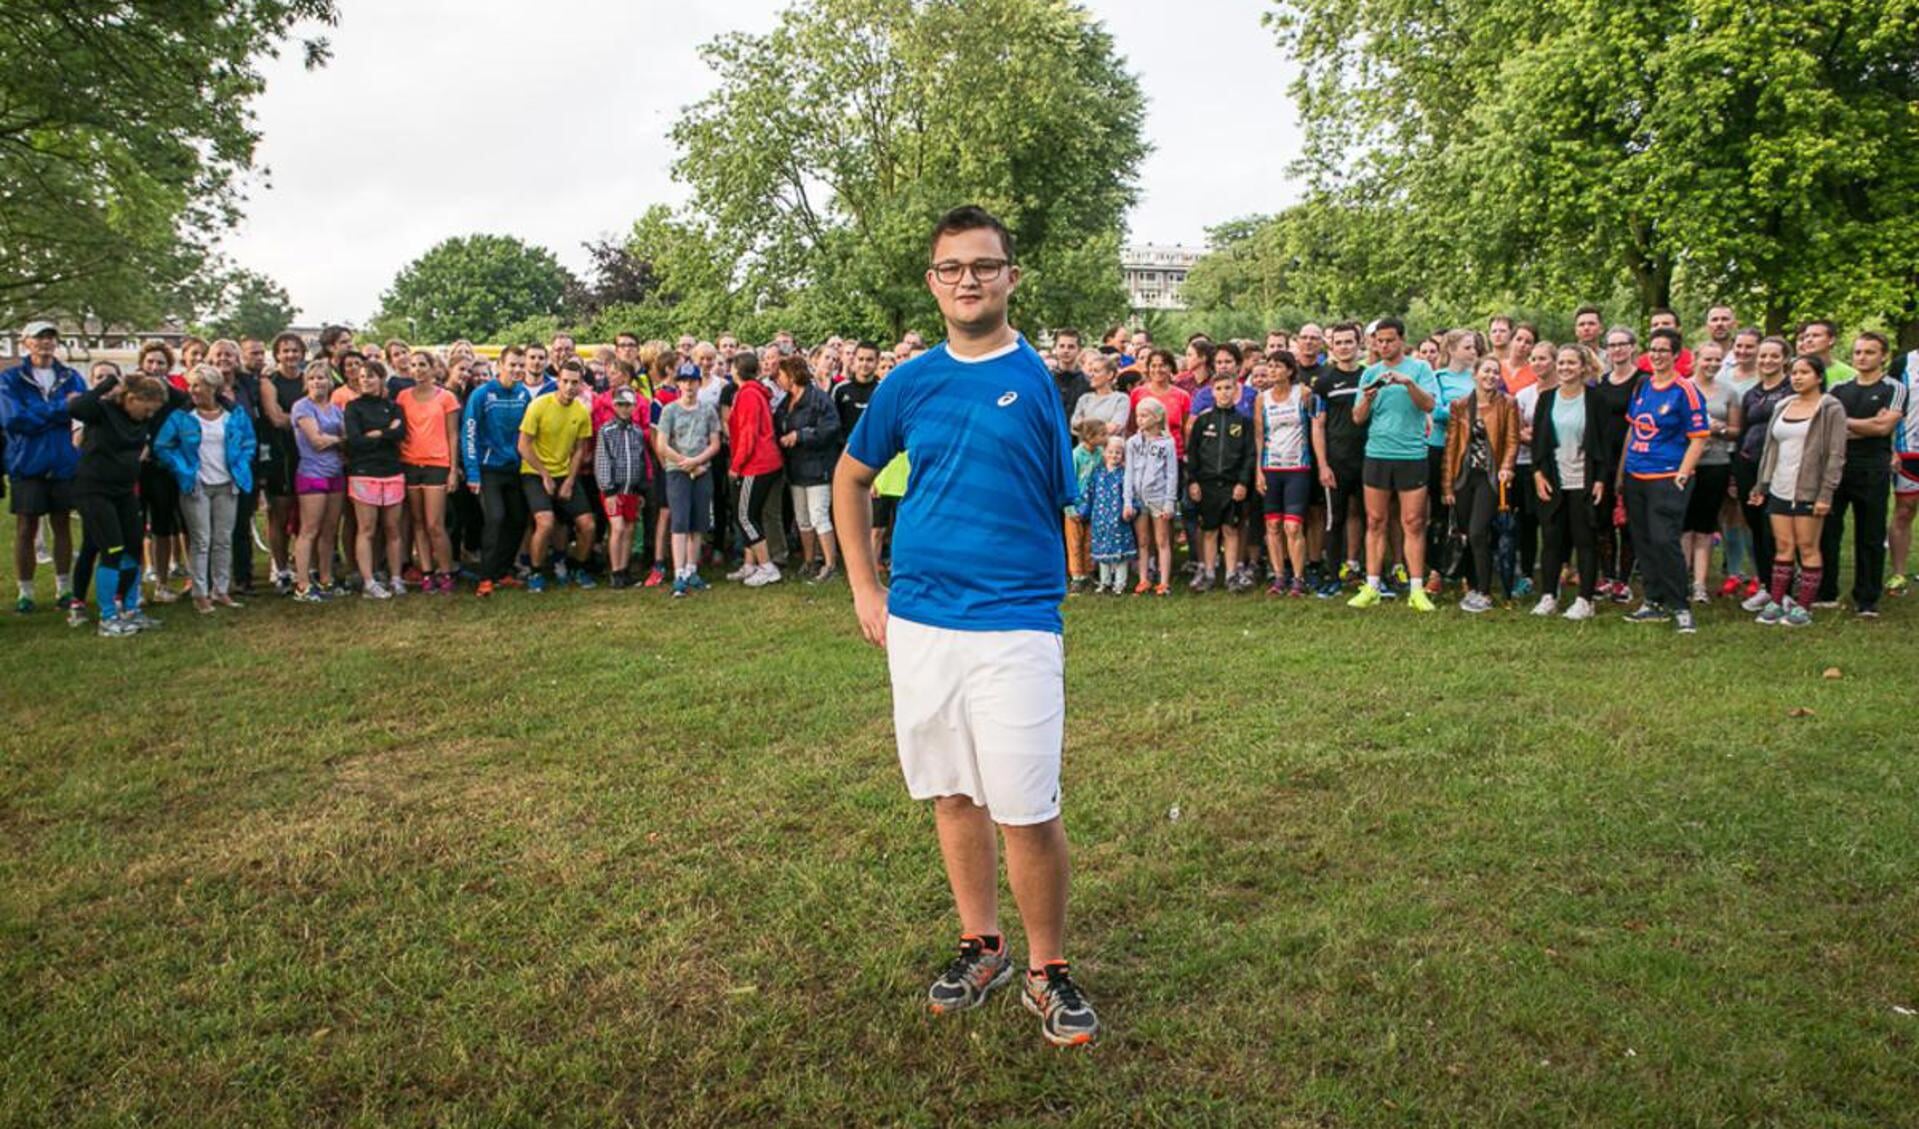 Bredanaar Thijs Kroezen wordt vrijdag voor de vijfde keer geopereerd aan kanker. Om hem te steunen liepen meer dan honderd vrienden, bekenden én onbekenden samen met familie met hem een hardlooprondje.